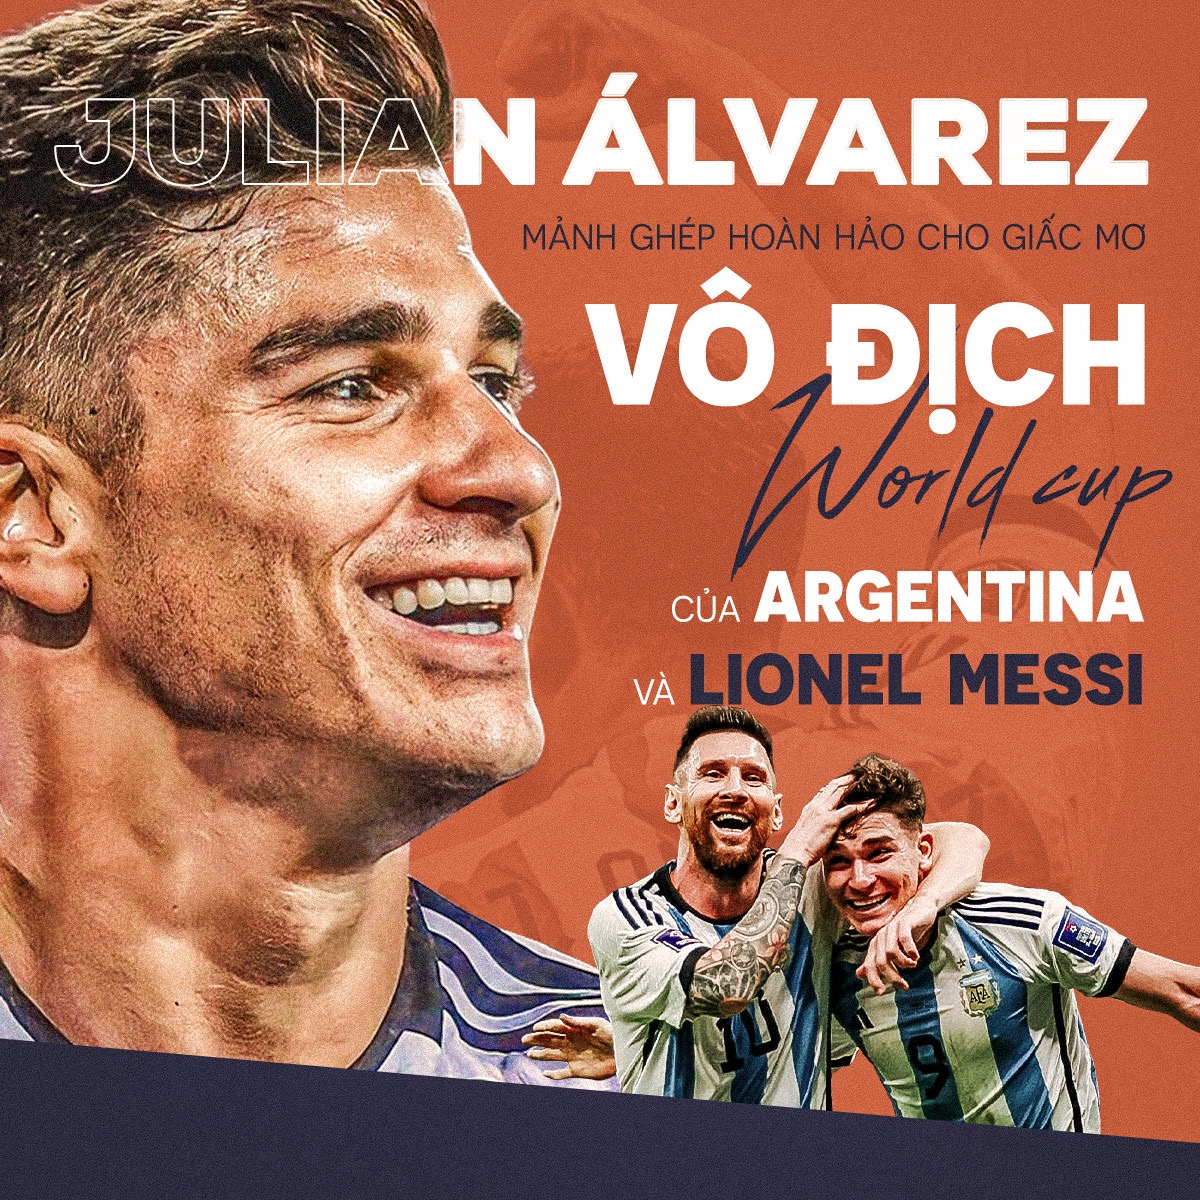 Julian Alvarez là mảnh ghép hoàn hảo cho giấc mơ World Cup của Messi - Ảnh 2.